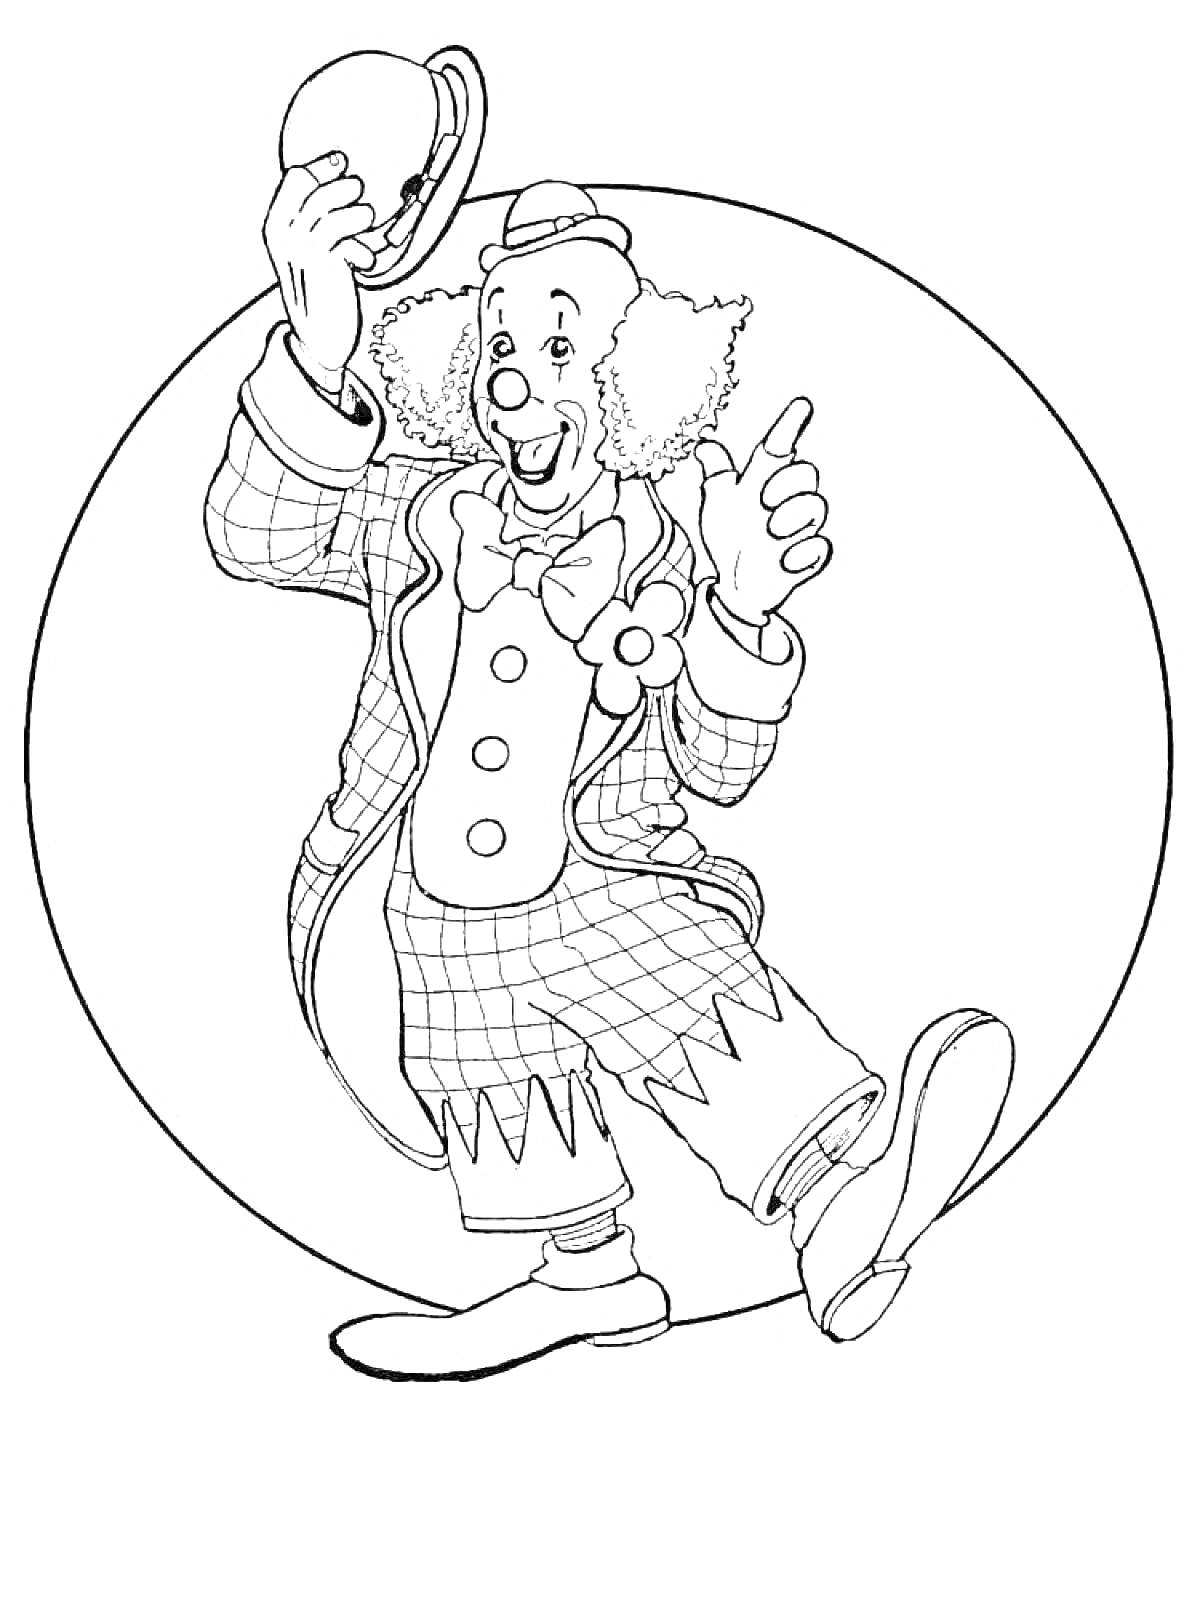 Клоун, держащий шляпу, гофрированные волосы, костюм с клетчатым узором, пуговицы-большие круги, бант, клоунские туфли, круглый фон.